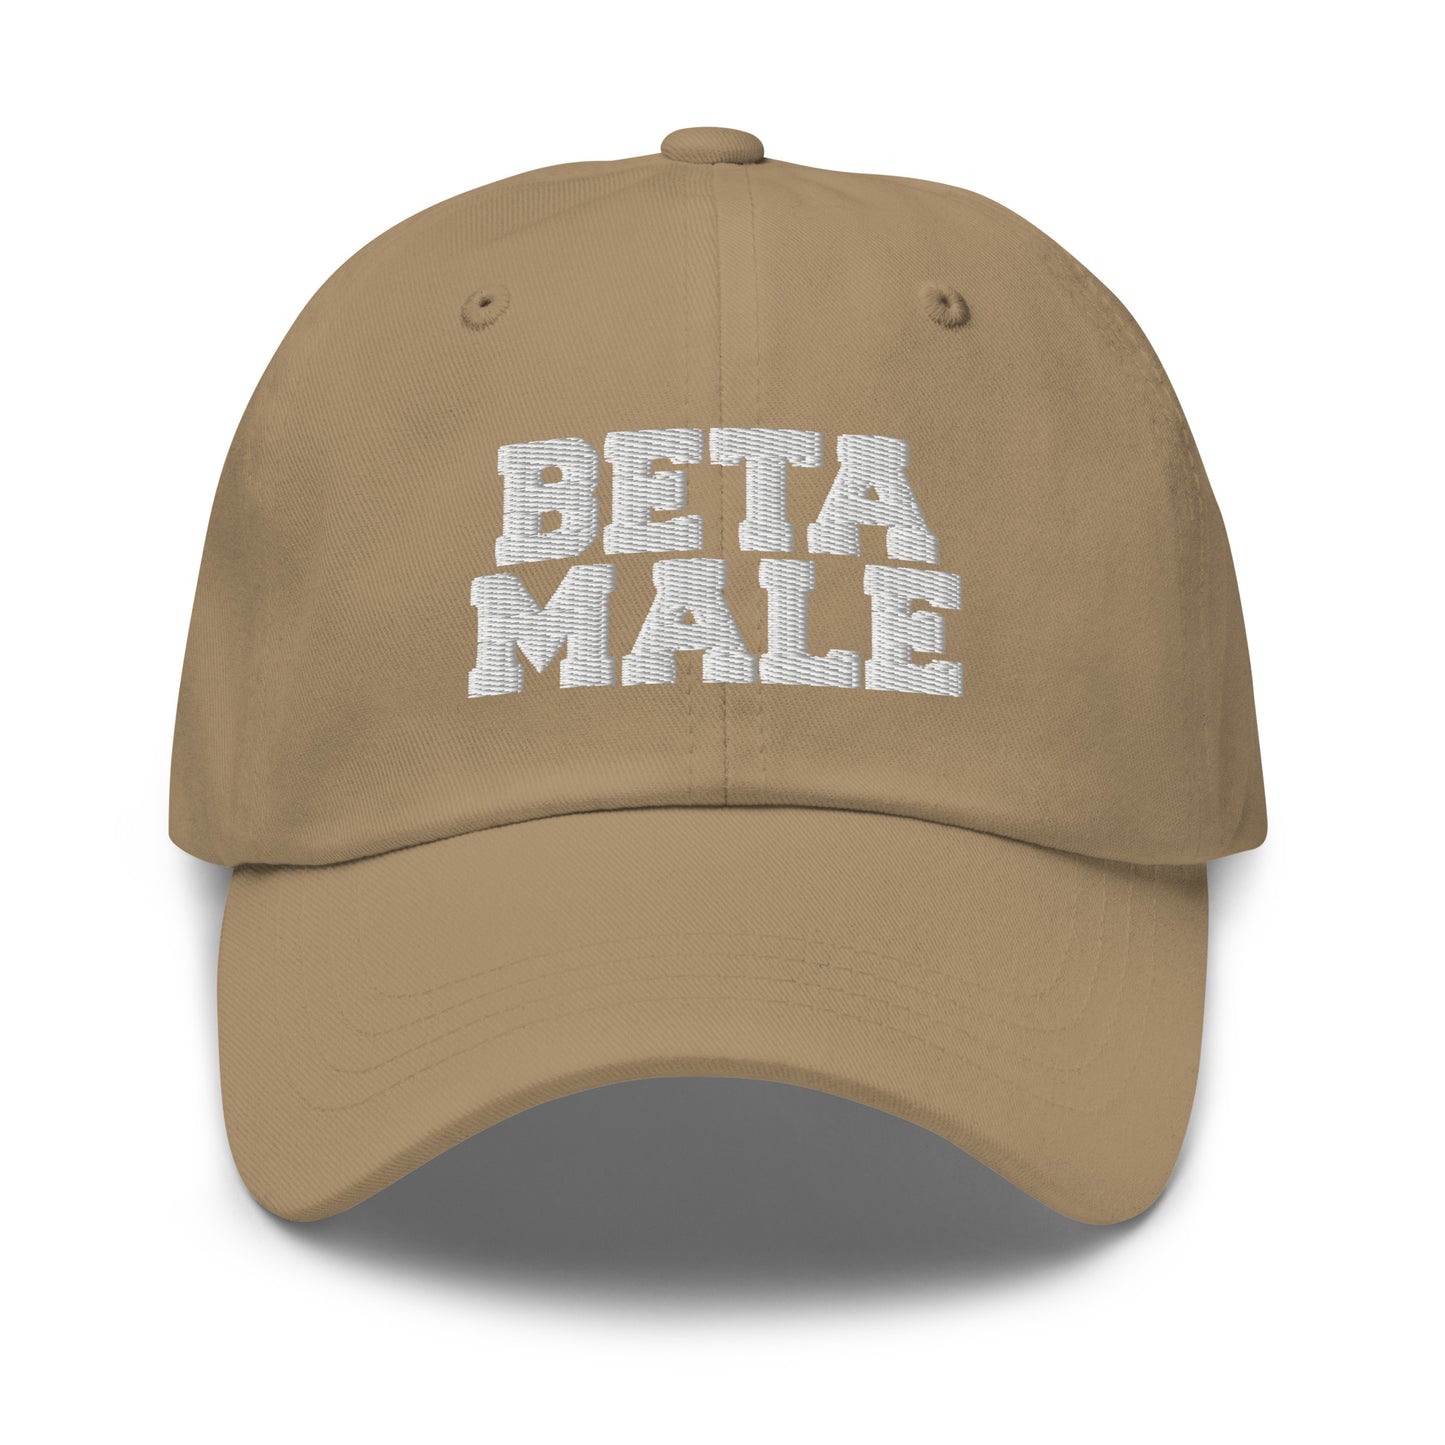 Beta Male hat